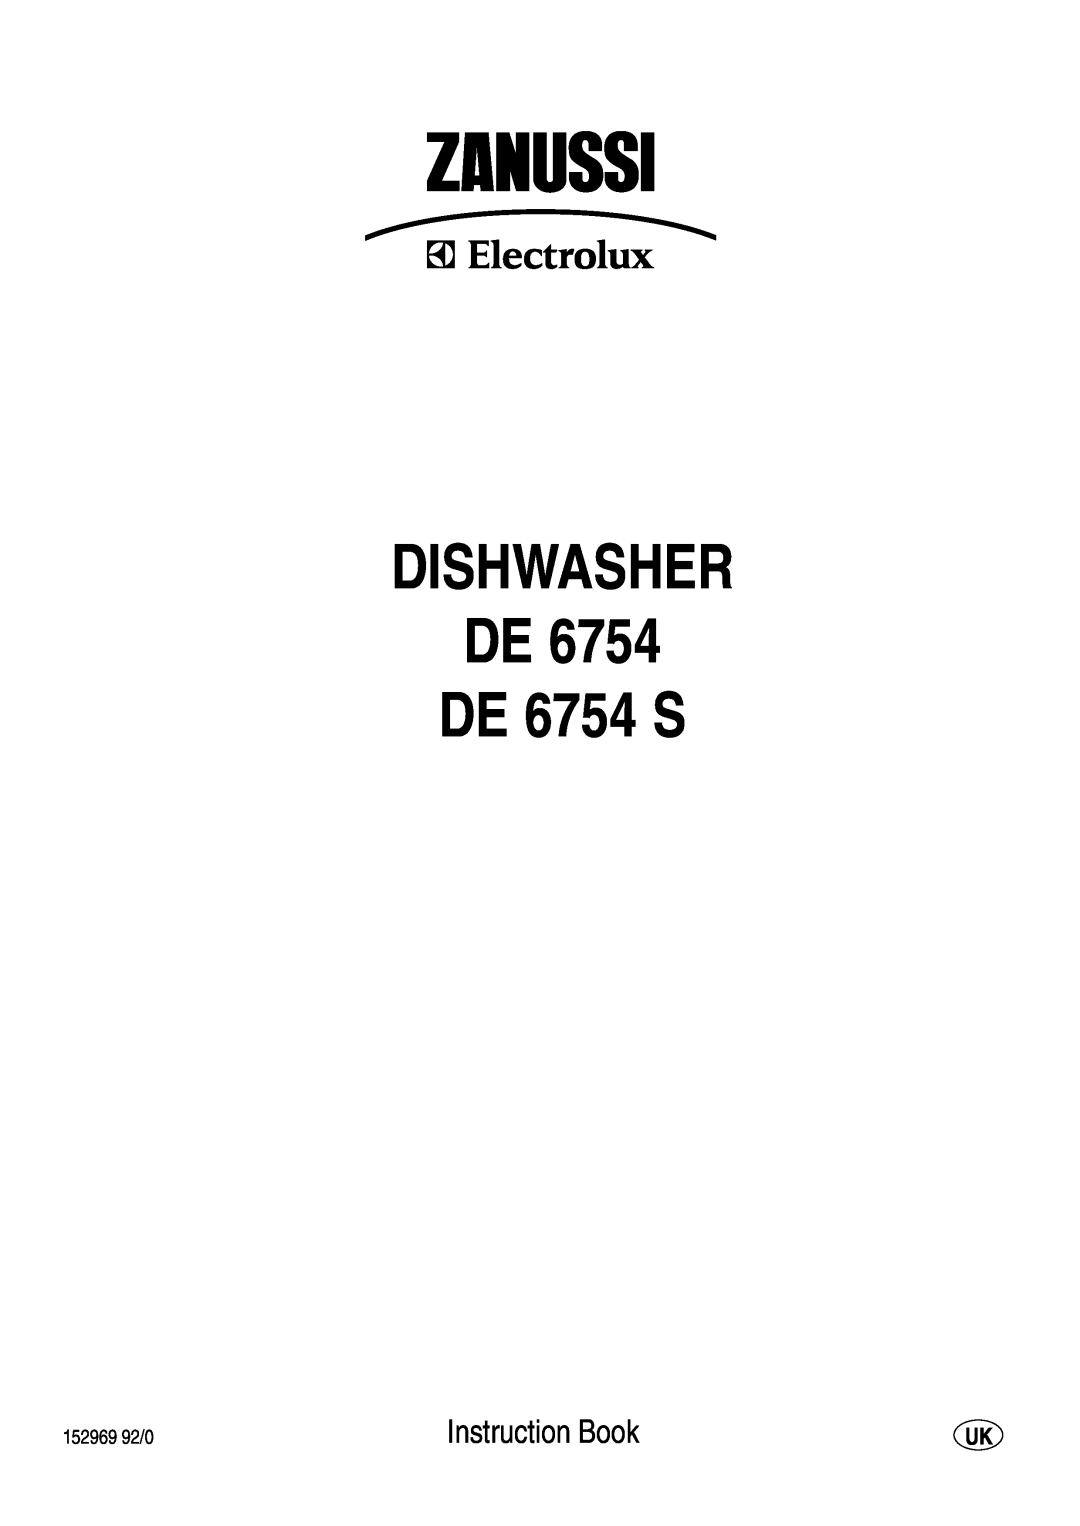 Zanussi manual DISHWASHER DE DE 6754 S, Instruction Book 